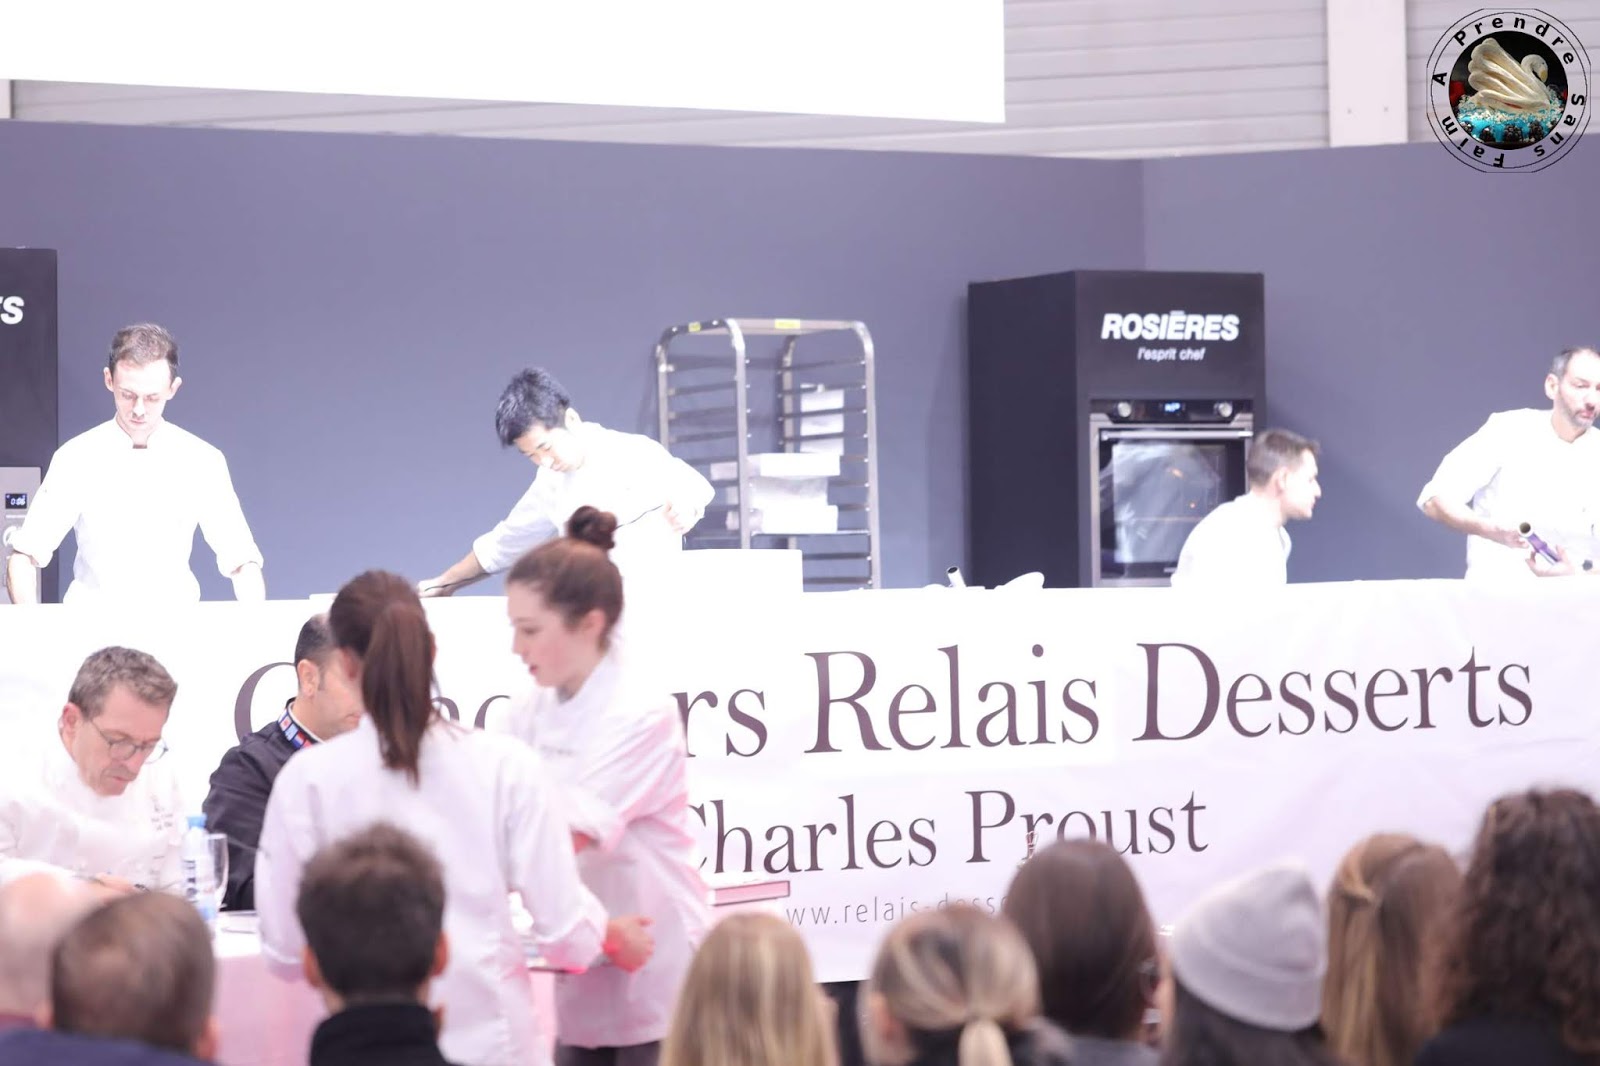 Concours Relais Desserts Charles Proust au Salon du Chocolat 2018